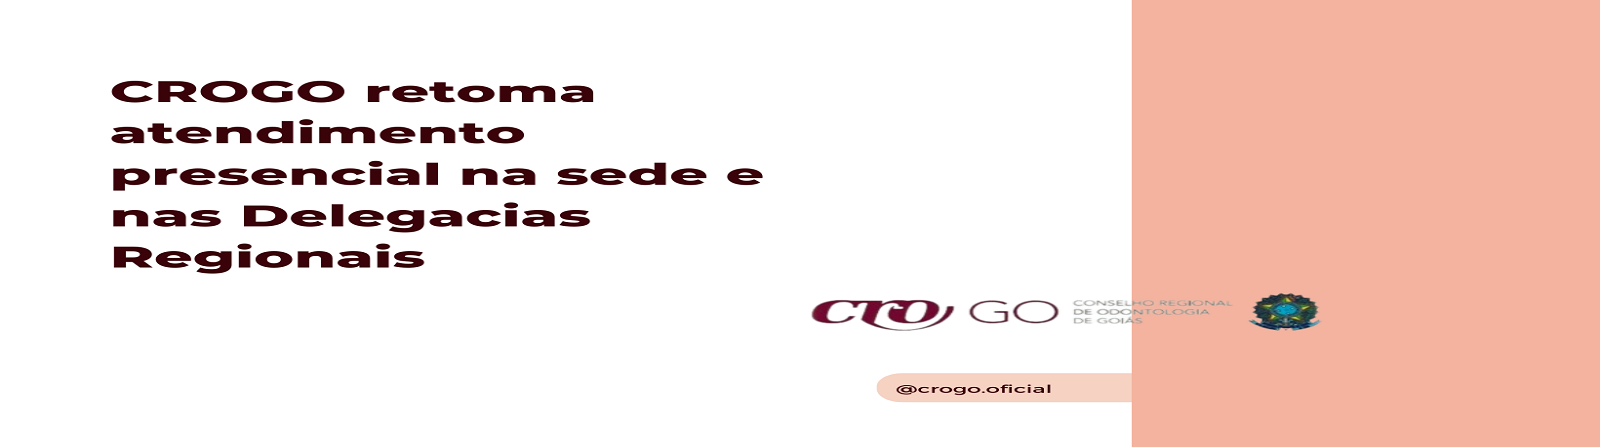 CROGO_retoma_atendimento_presencial__-_slide_para_site_-_1600_x_447